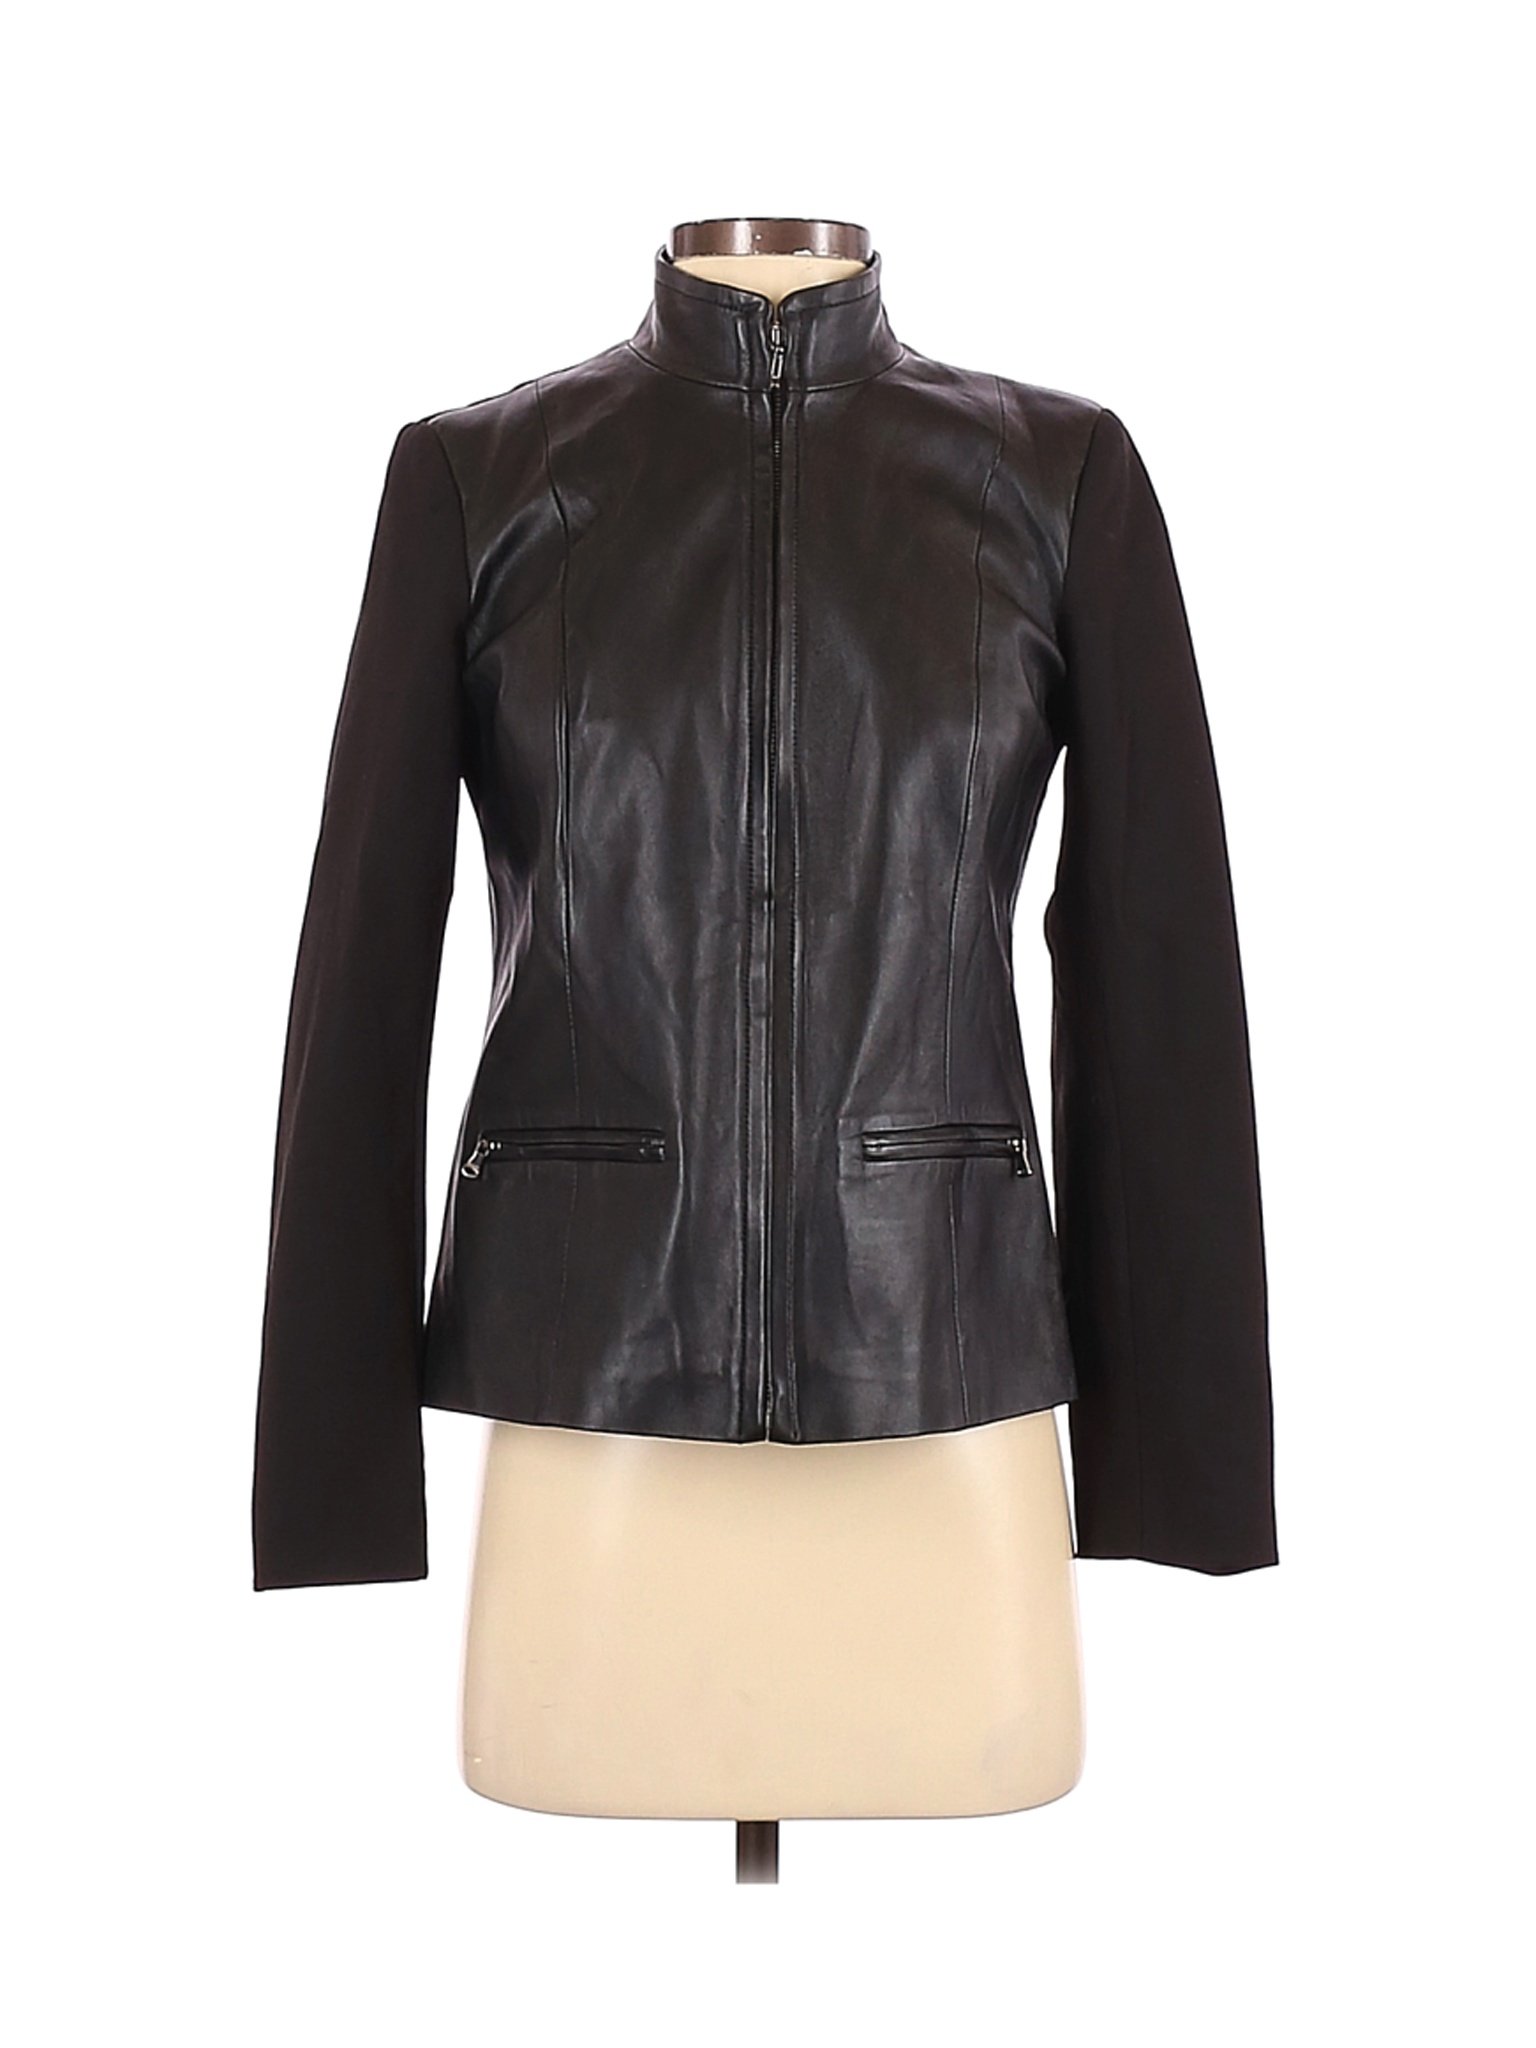 Talbots Women Black Leather Jacket 4 Petites | eBay